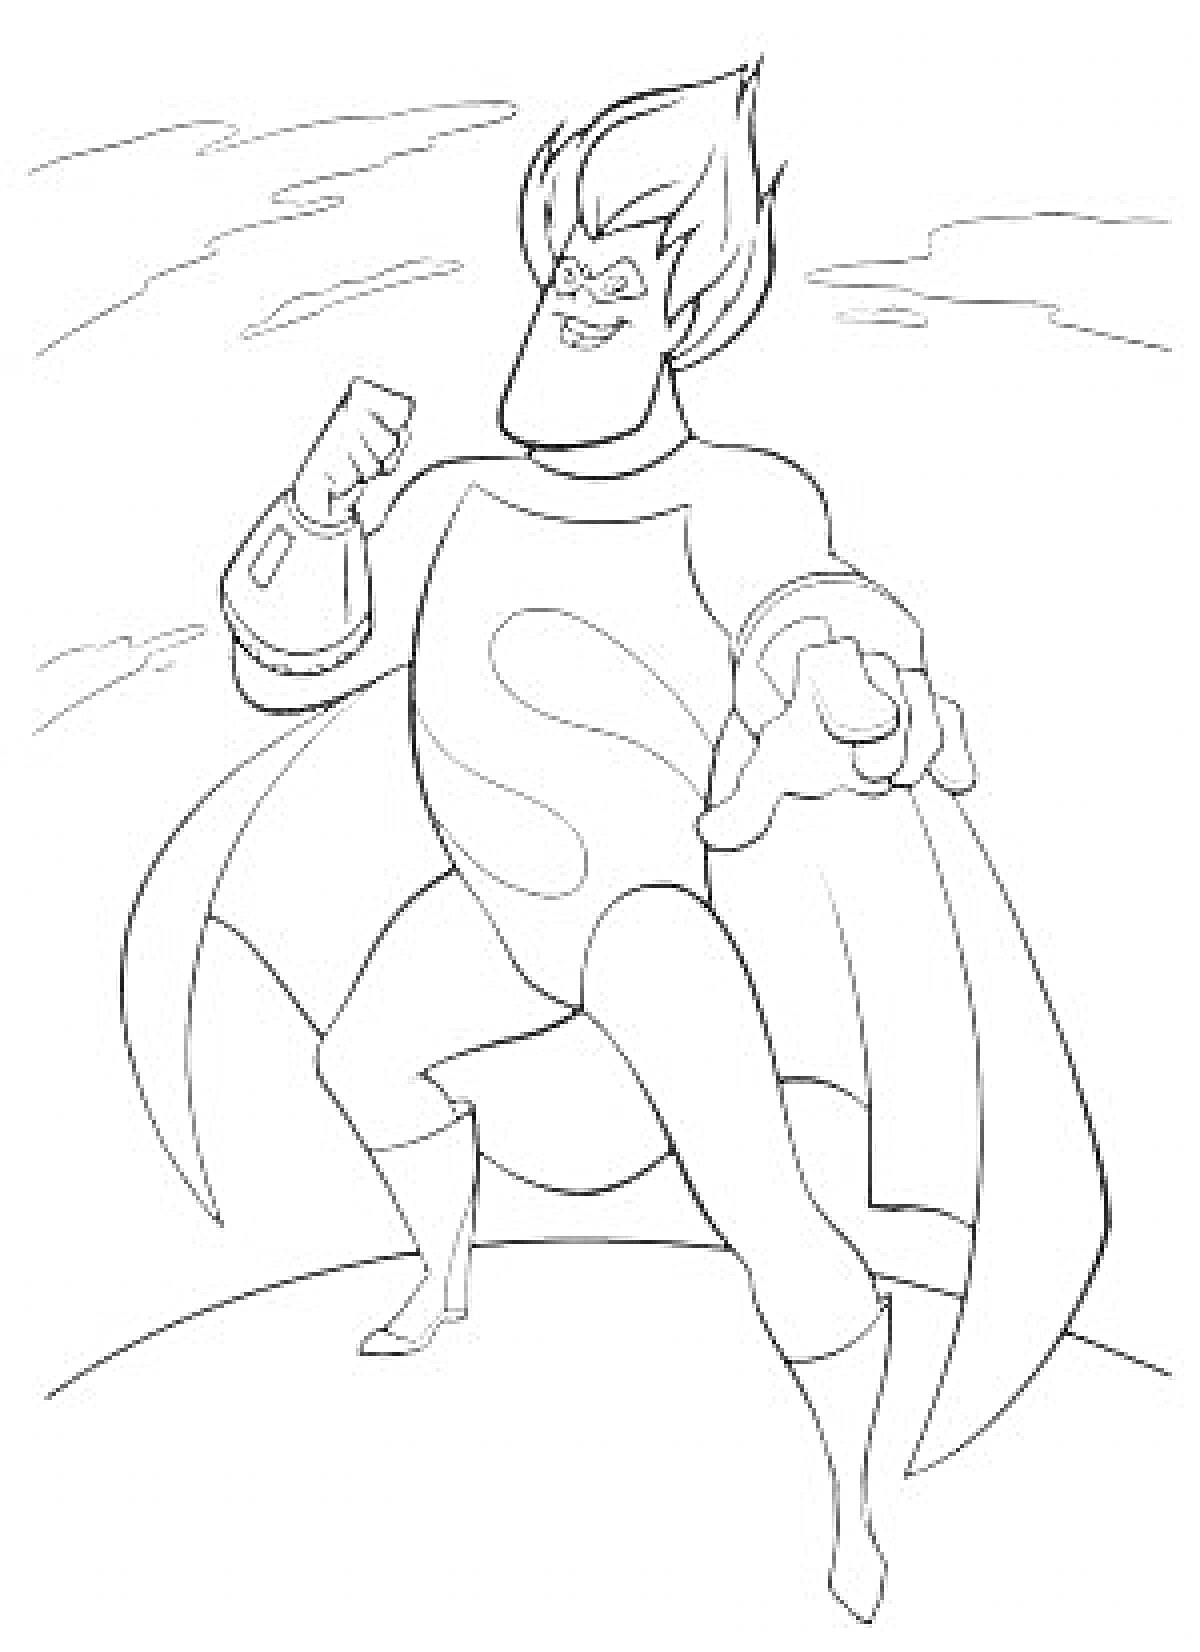 Раскраска Супергерой из мультфильма «Суперсемейка» в боевой стойке на фоне облаков